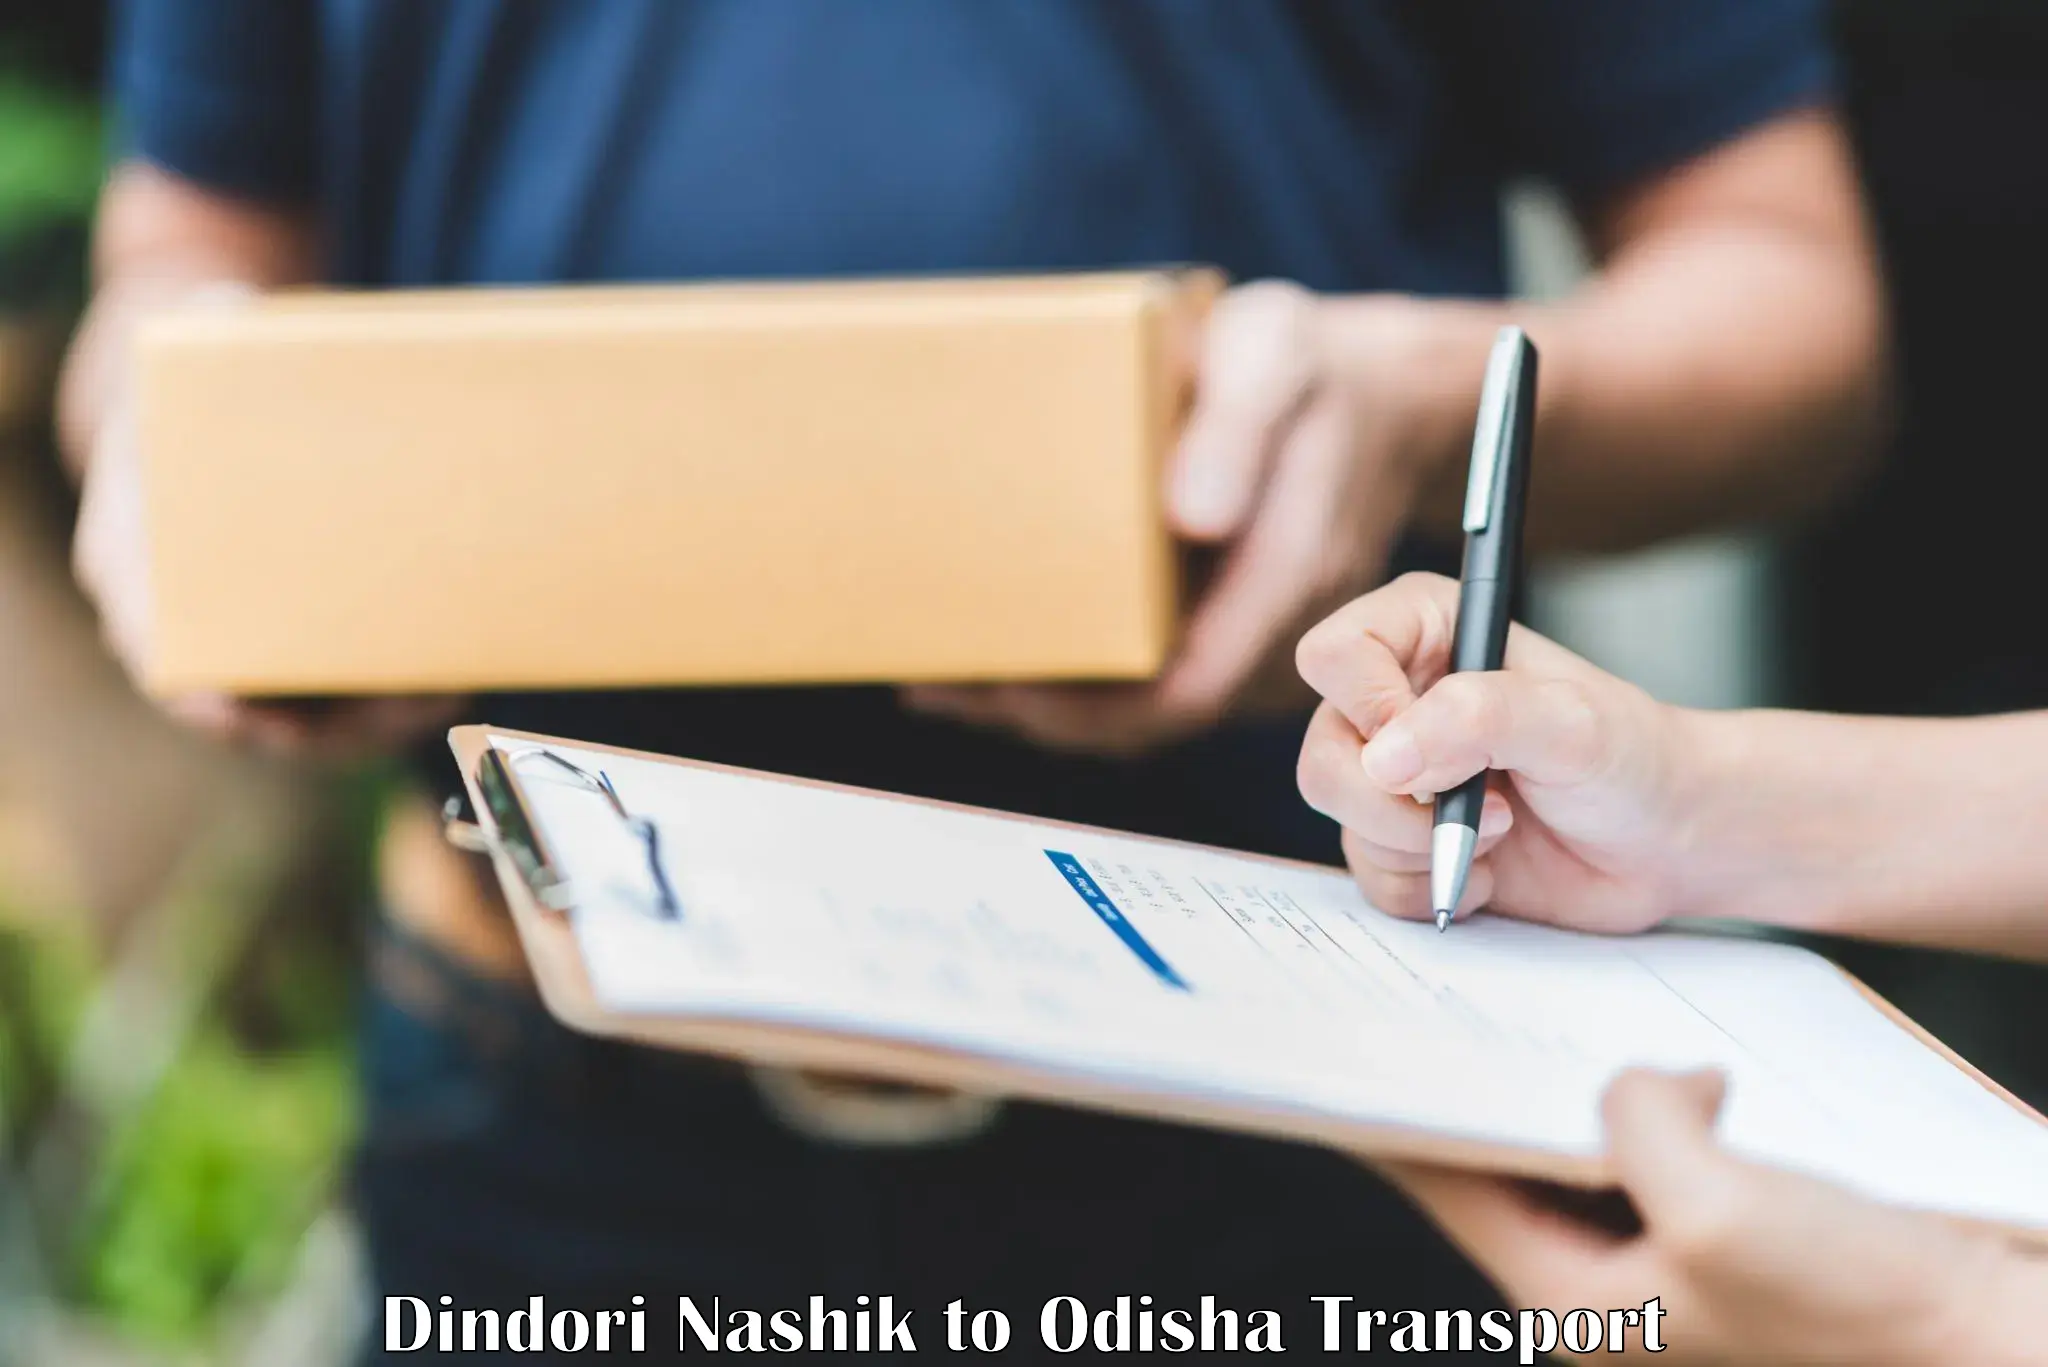 Bike transport service Dindori Nashik to Odisha